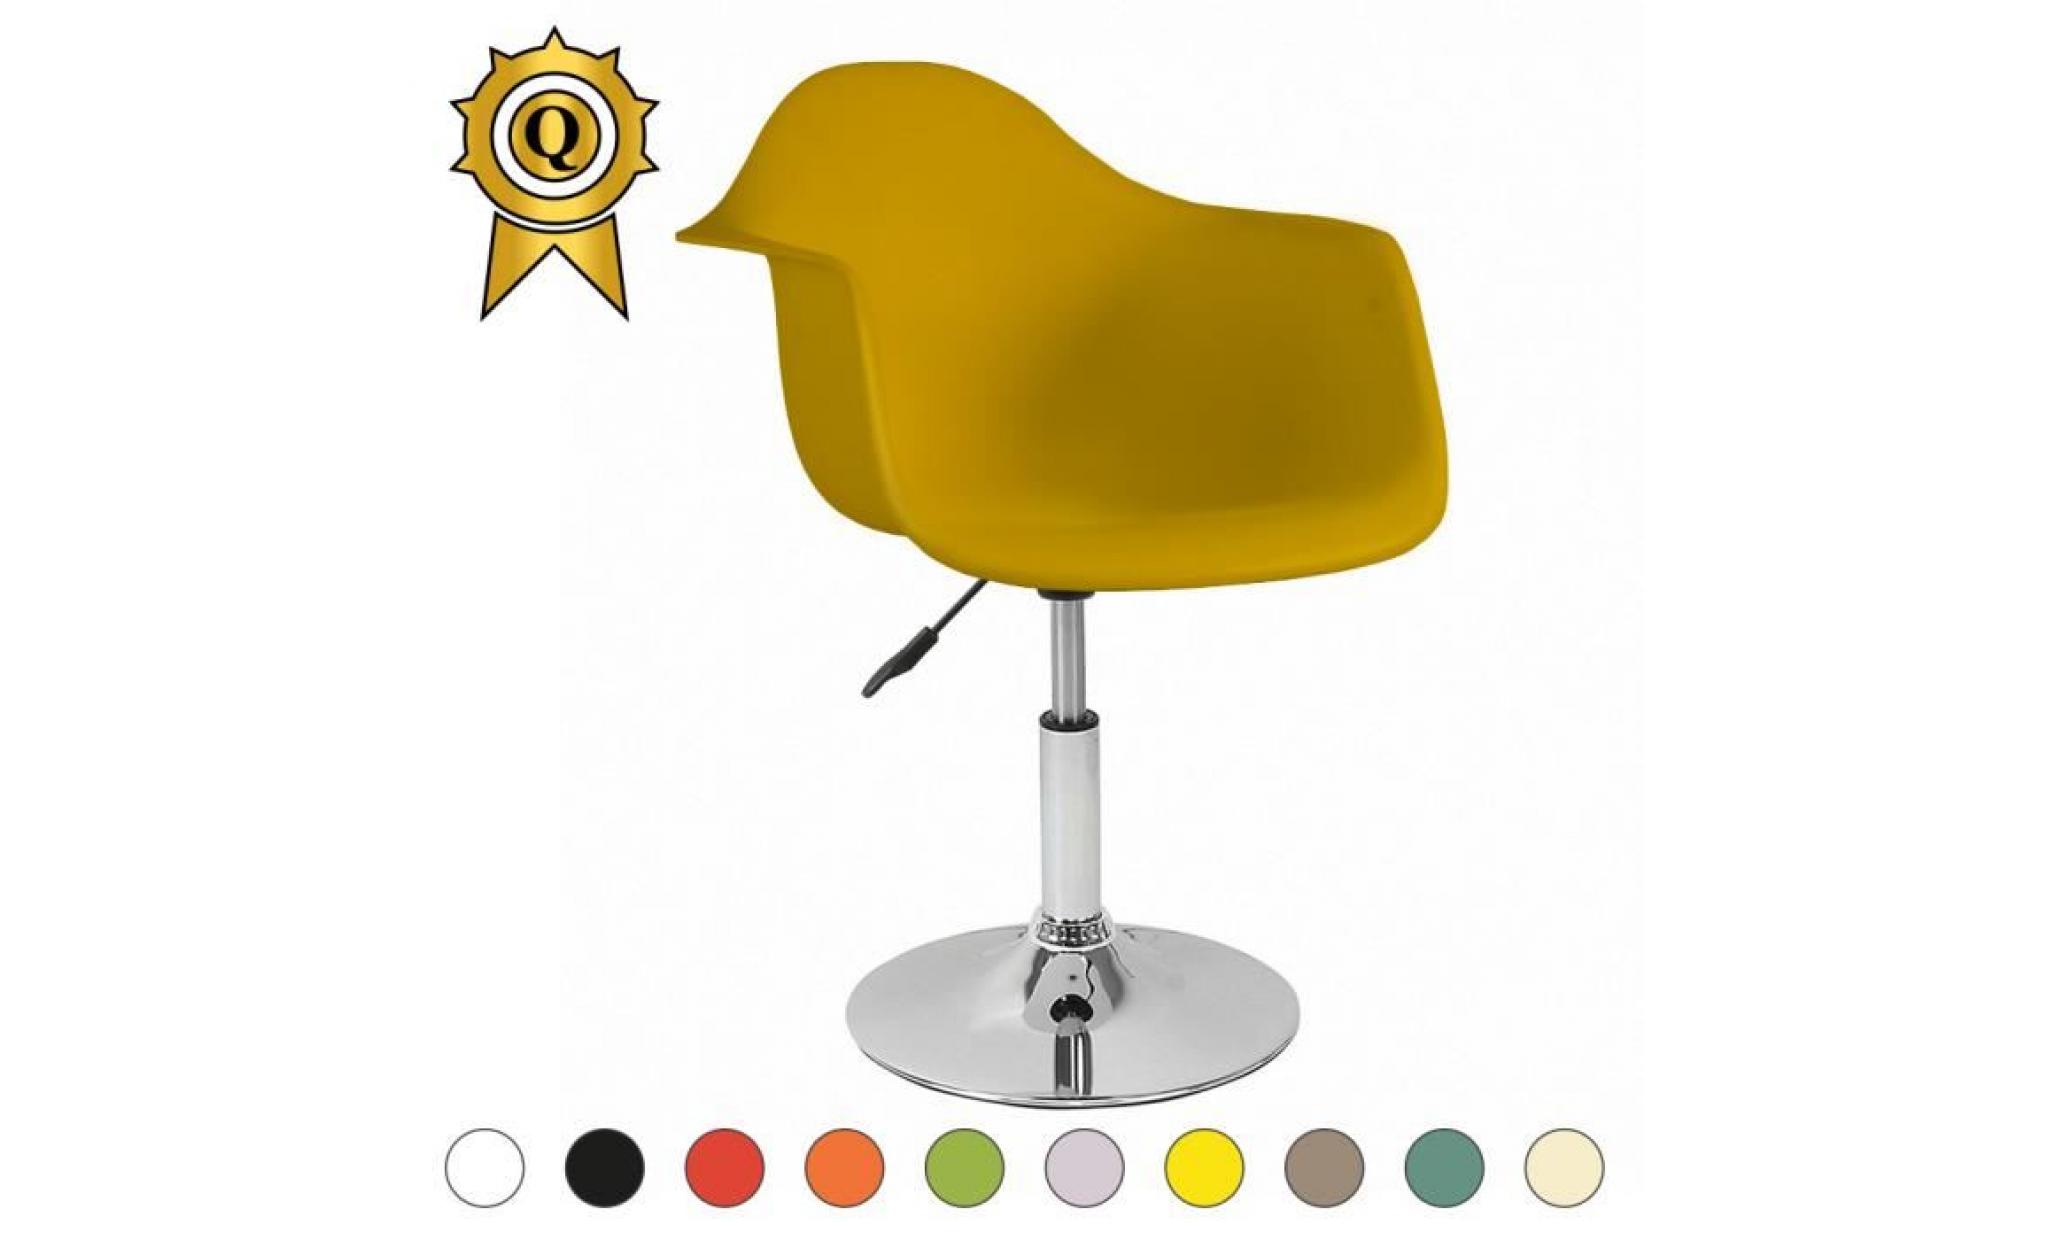 1 x fauteuil style eames eiffel daw reglable en hauteur pivotant sur base acier chrome assise gris beton mobistyl®